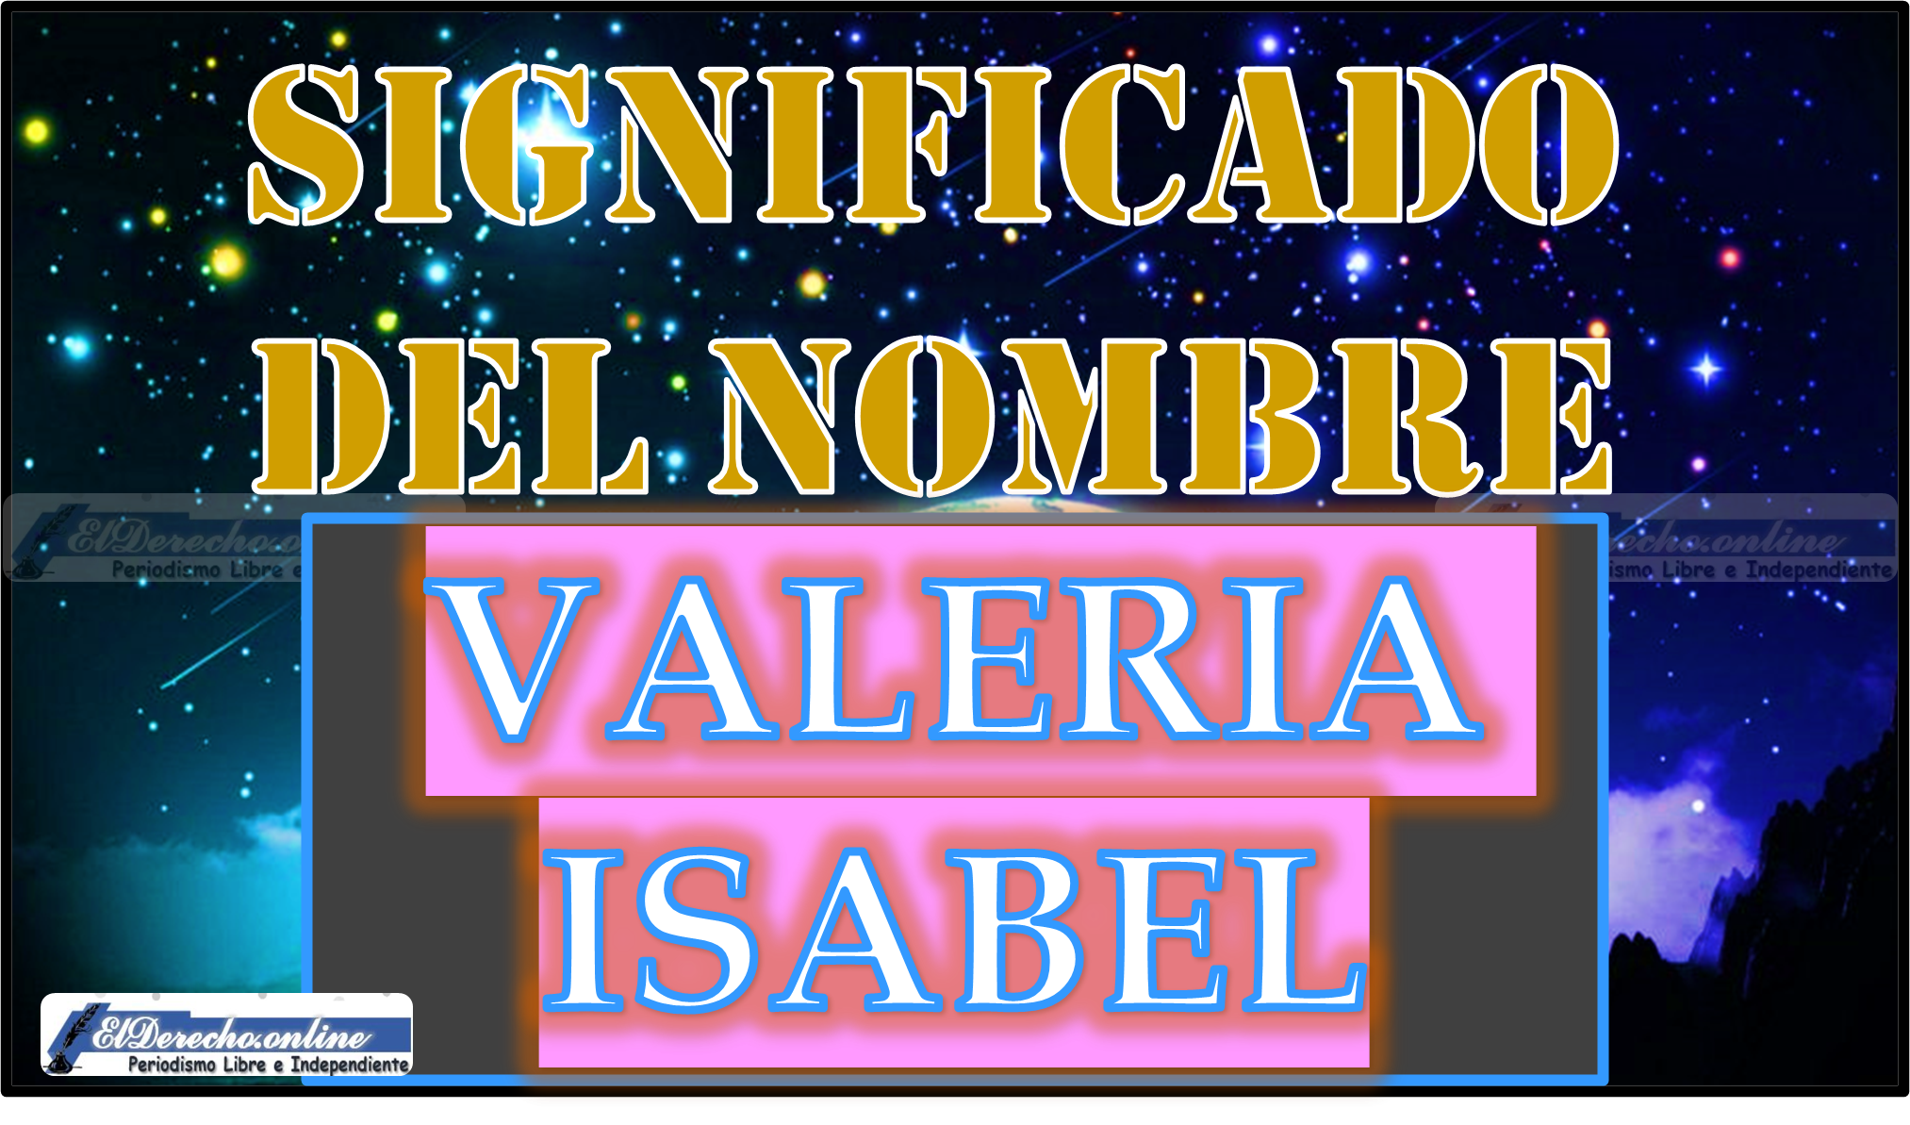 Significado del nombre Valeria Isabel, su origen y más